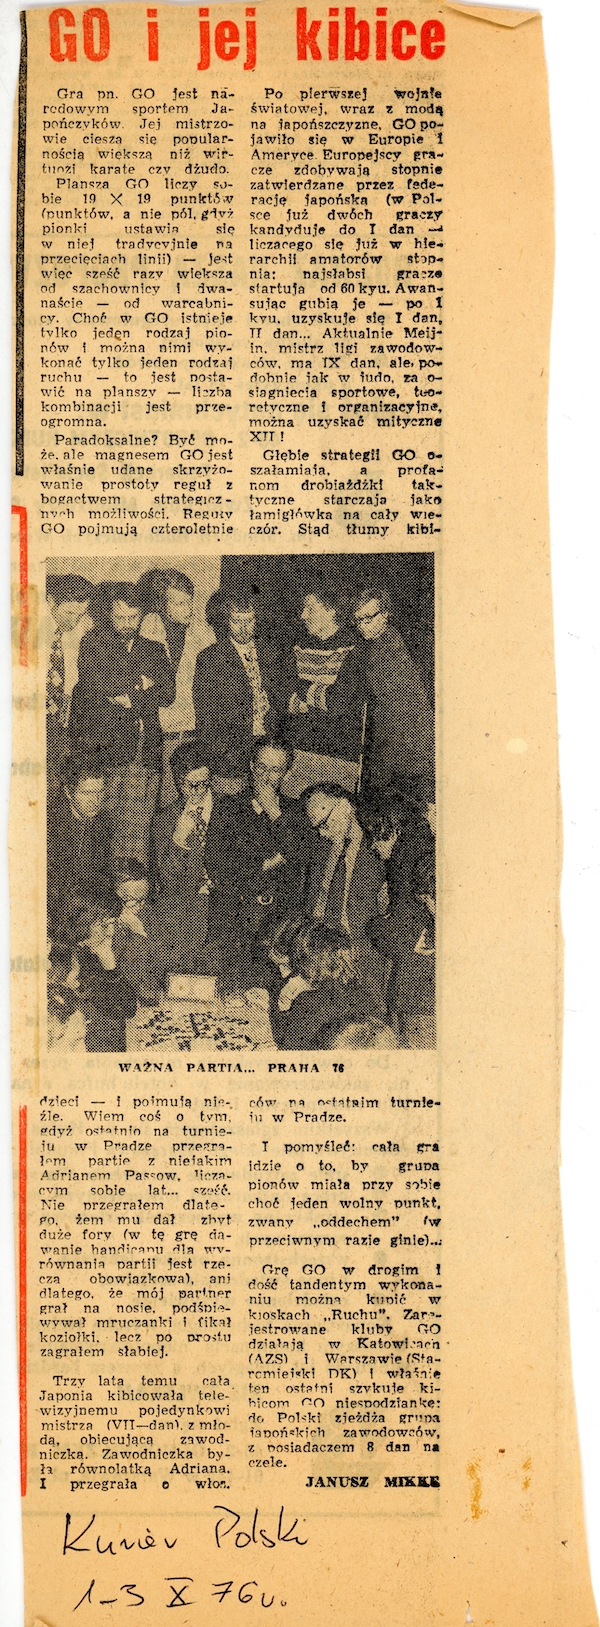 Artykuł w Kurierze Polskim (01.10.1976)